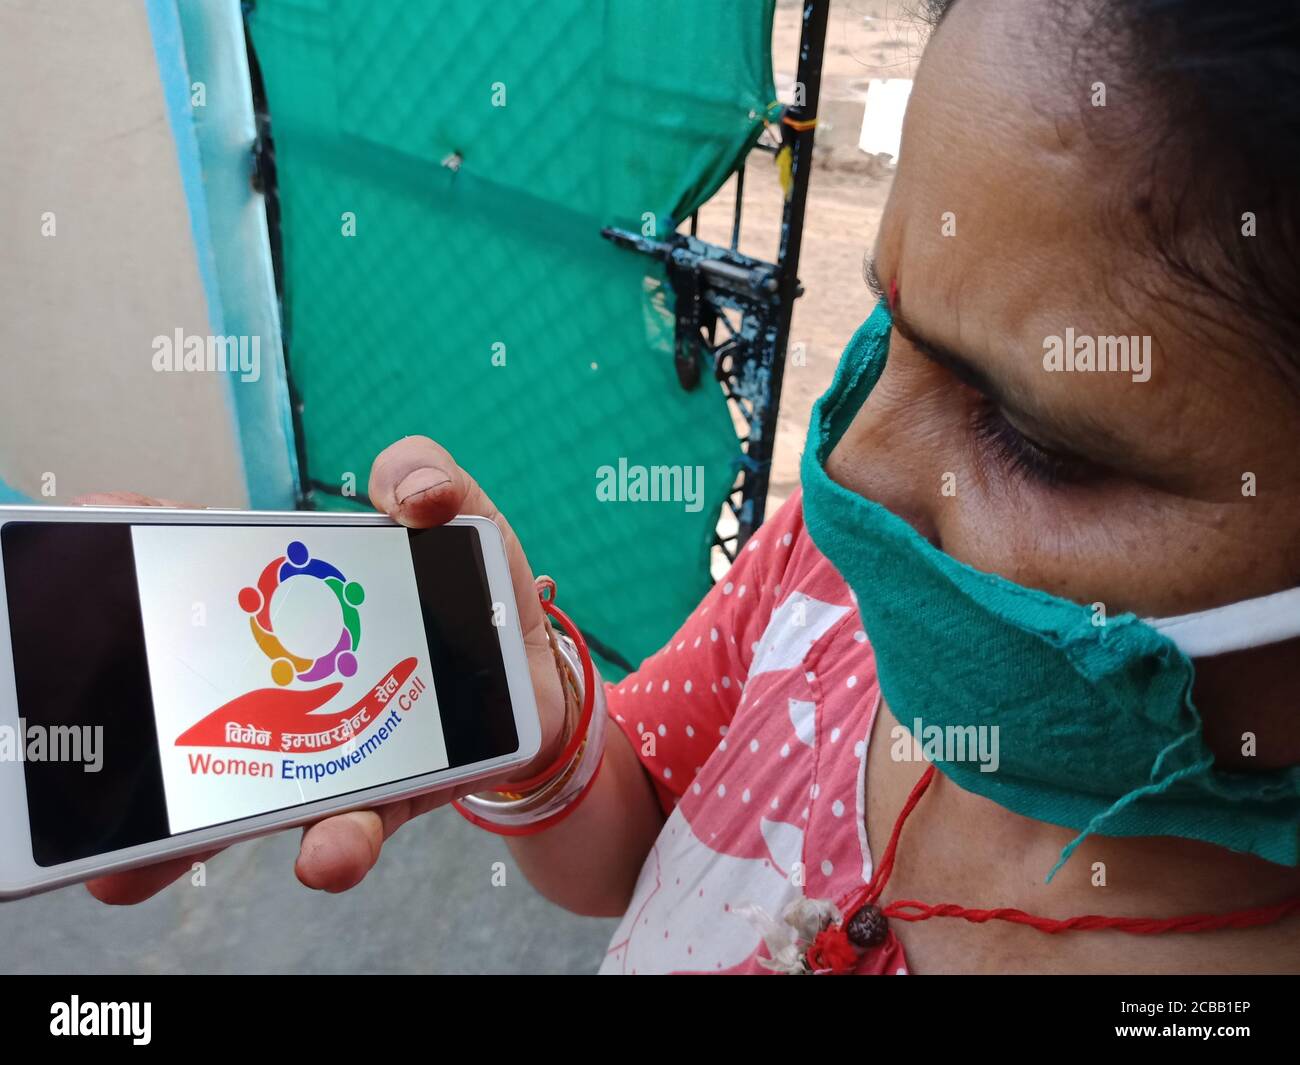 DISTRETTO KATNI, INDIA - 28 MAGGIO 2020: Un villaggio indiano Donna che tiene smartphone con visualizzazione delle donne empowerment schema cellulare sullo schermo, iniziato da Foto Stock